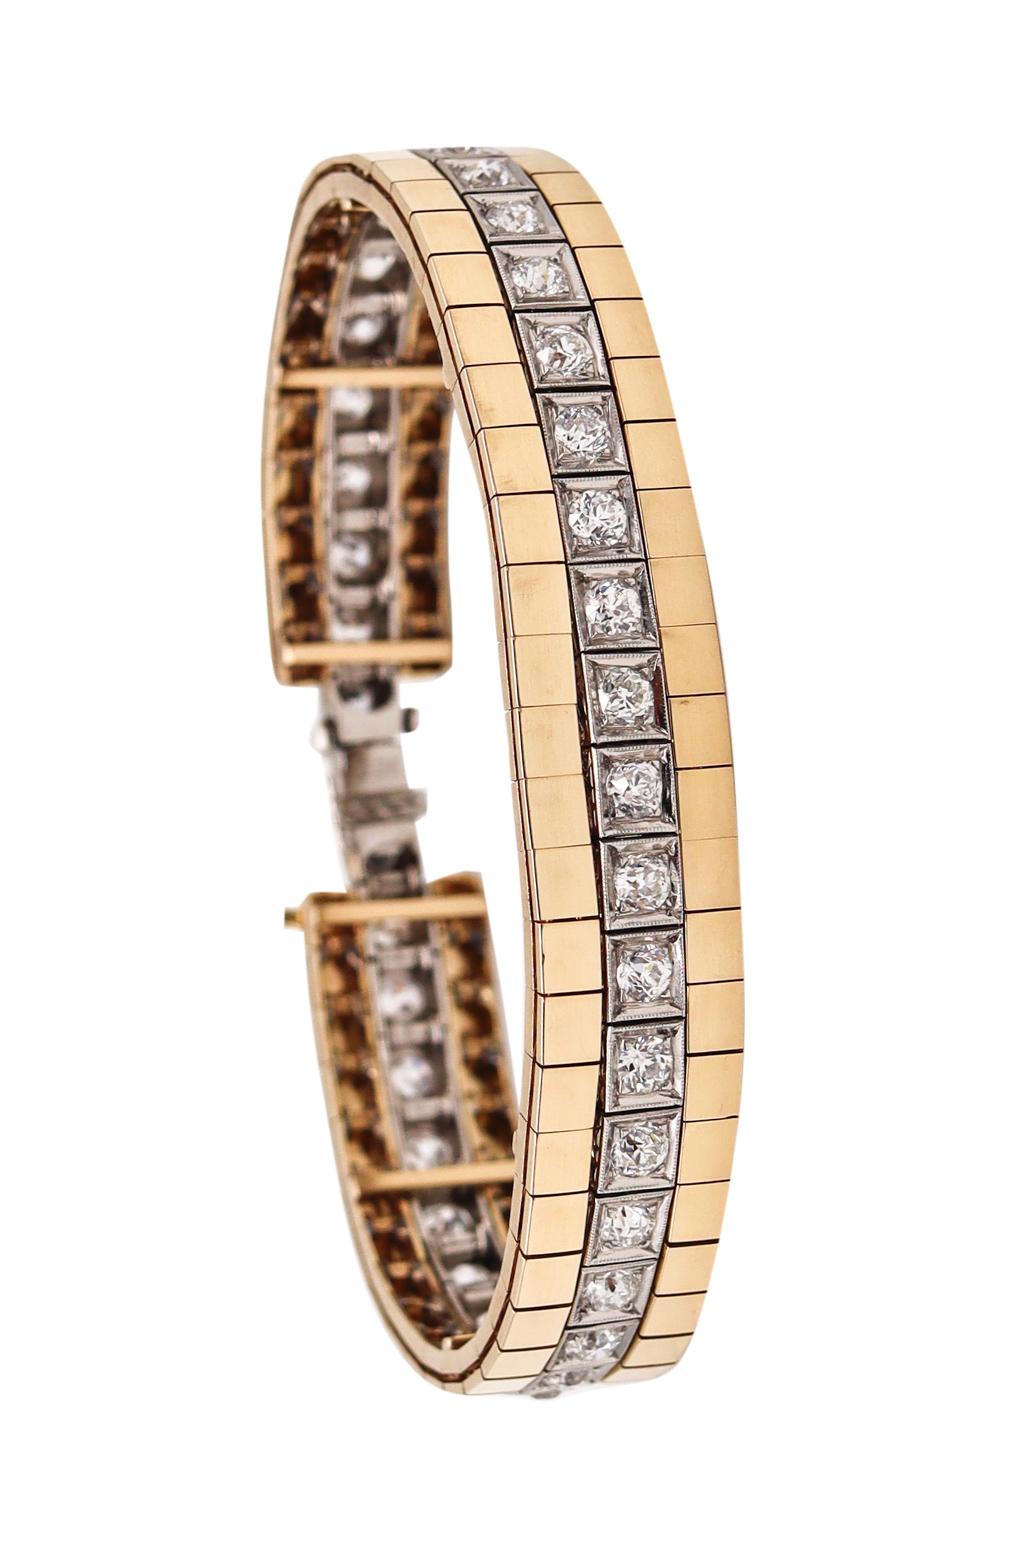 Ein von Raymond Yard entworfenes, wandelbares Armband mit Riviera-Diamanten.

Wunderschönes Stück, das in den 1940er Jahren im Atelier von Raymond C. Yard während des amerikanischen Art déco und der Retro-Periode geschaffen wurde. Dieses